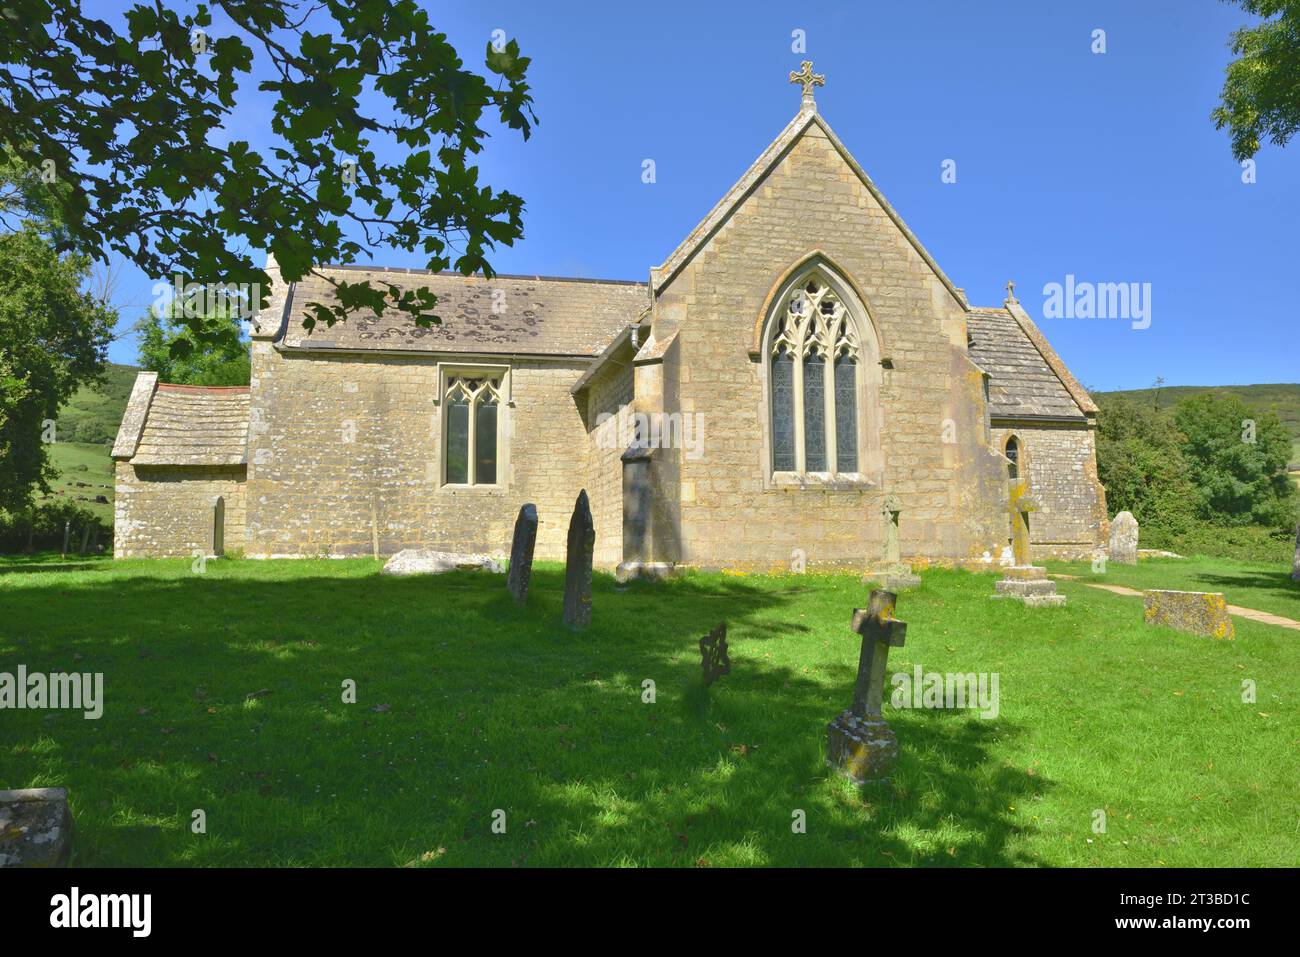 La chiesa di St Mary nel villaggio in rovina del Dorset di Tyneham. La chiesa, tuttavia, rimane praticamente intatta. Foto Stock